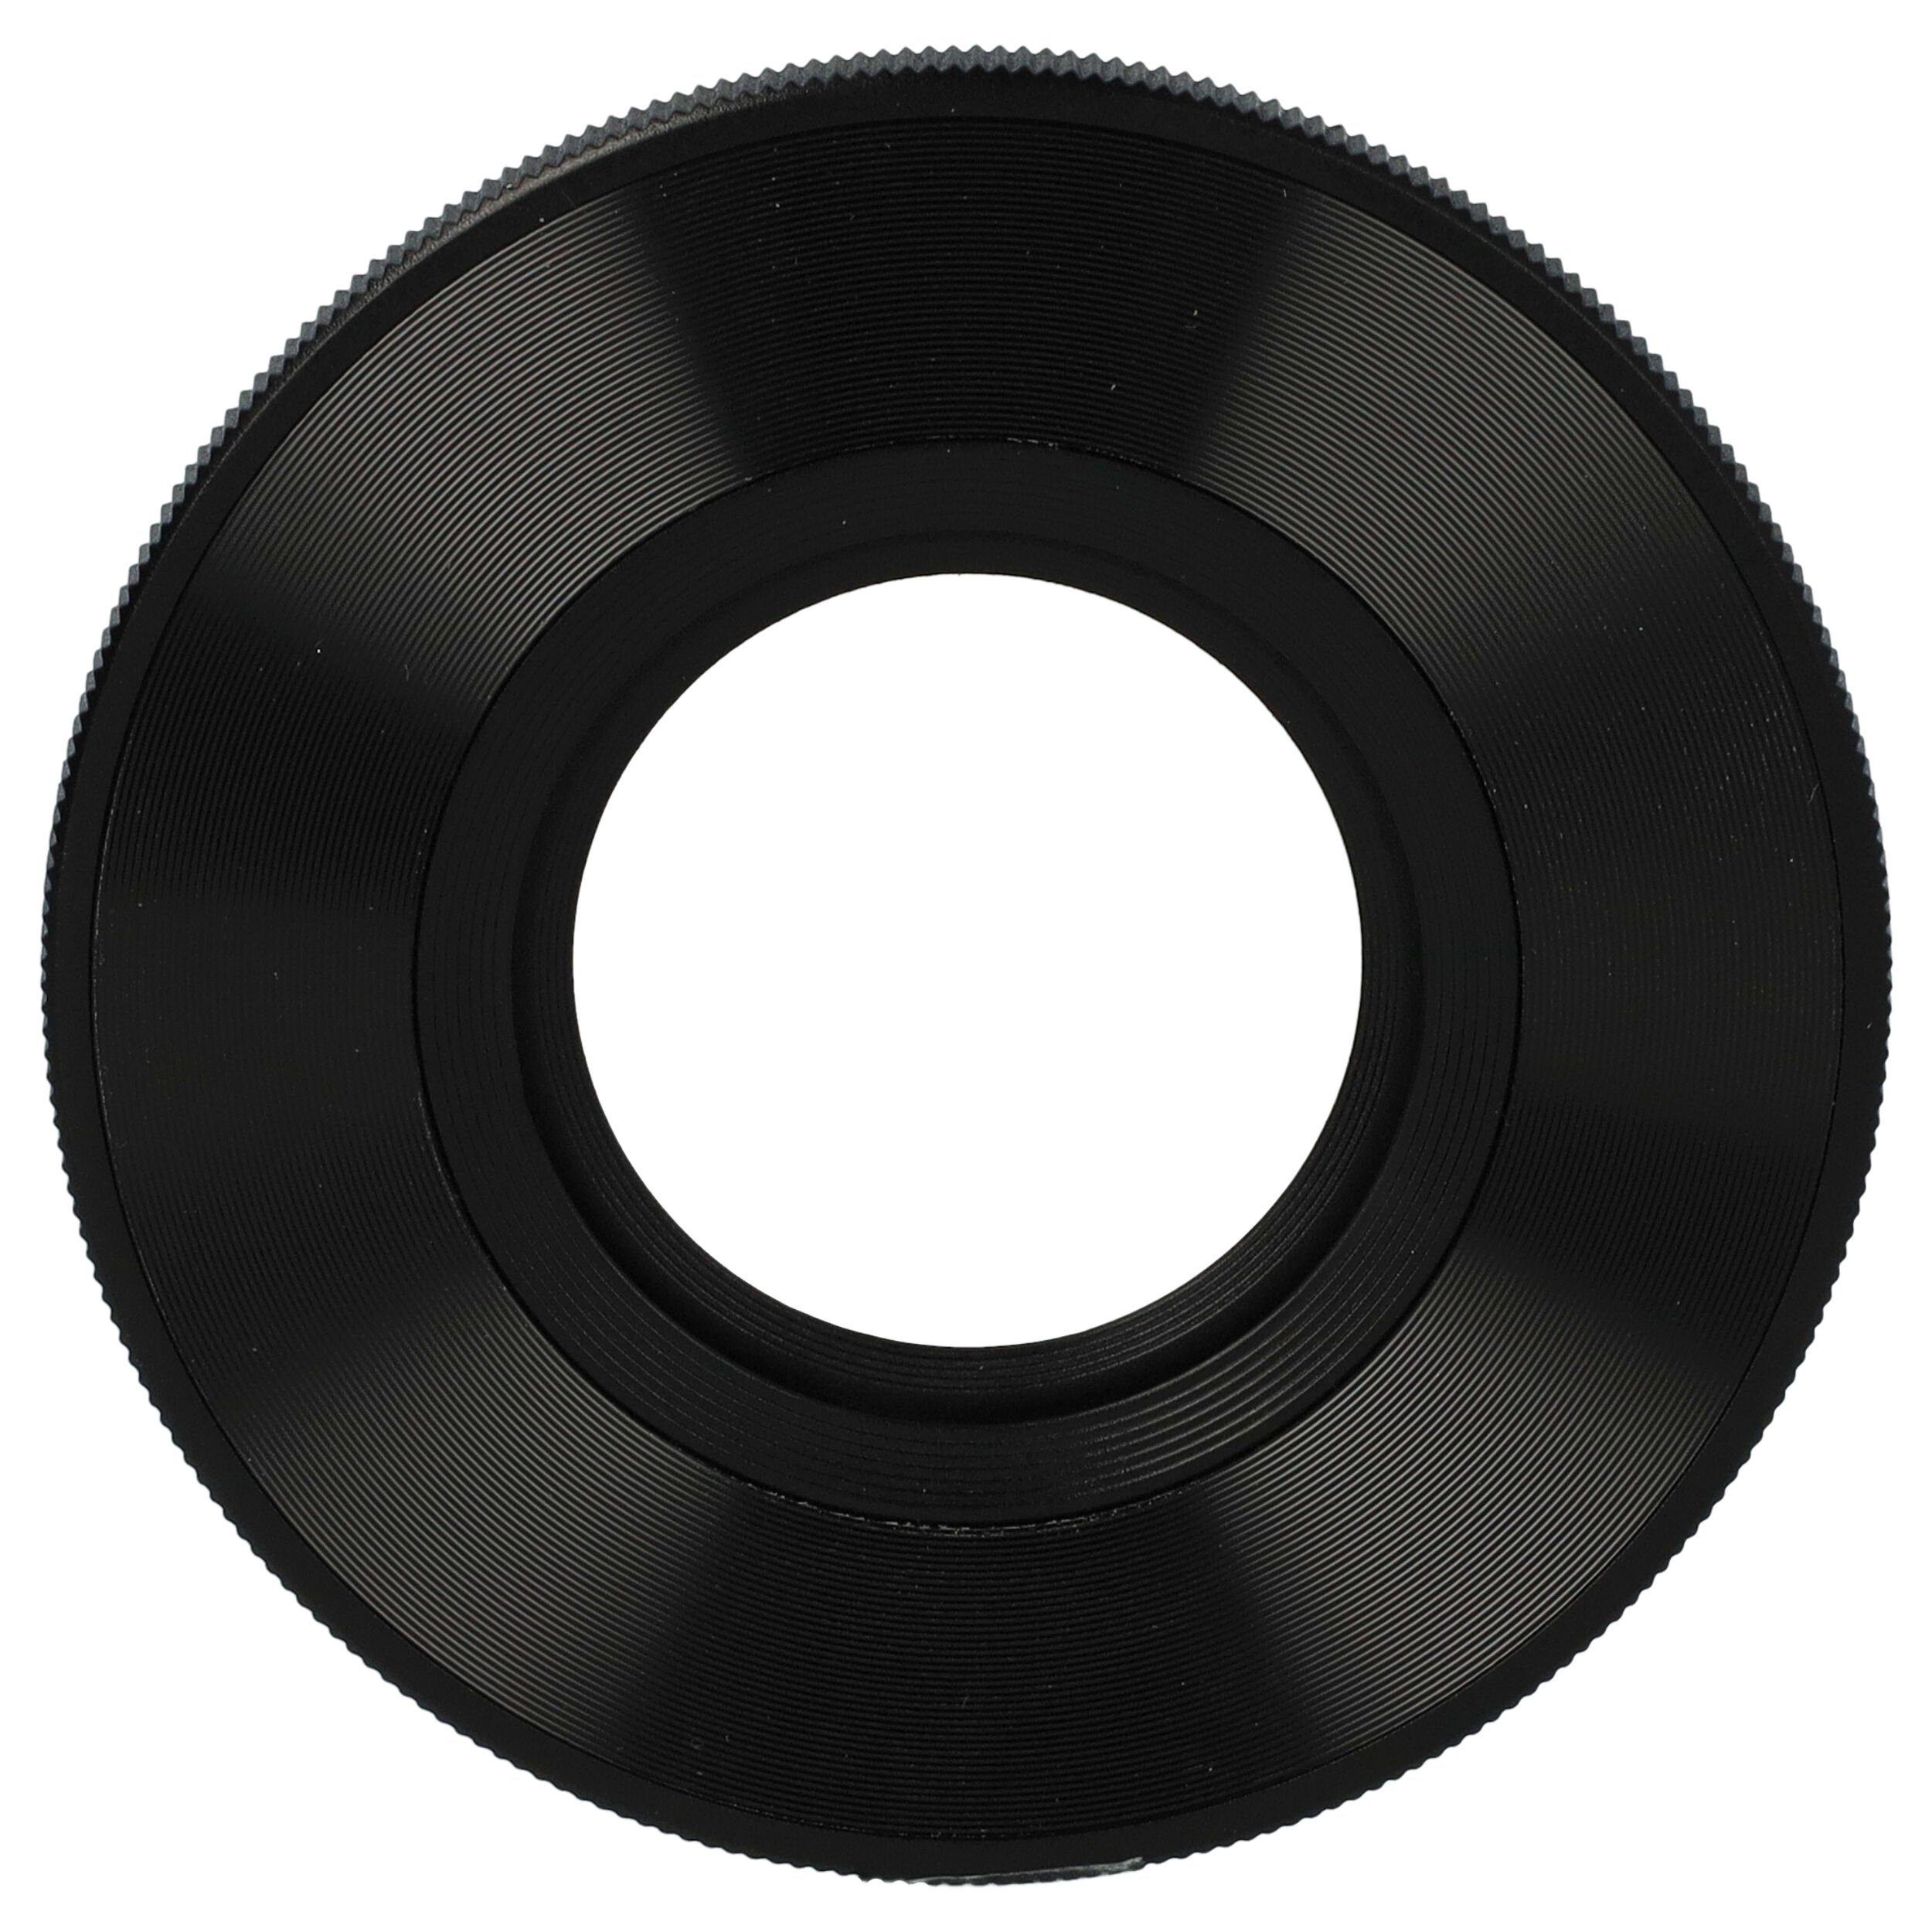 vhbw Objektivdeckel passend für Sony PZ 16-50mm F3.5-5.6, SELP1650 16-50mm f/3.5-5.6 | Objektivdeckel